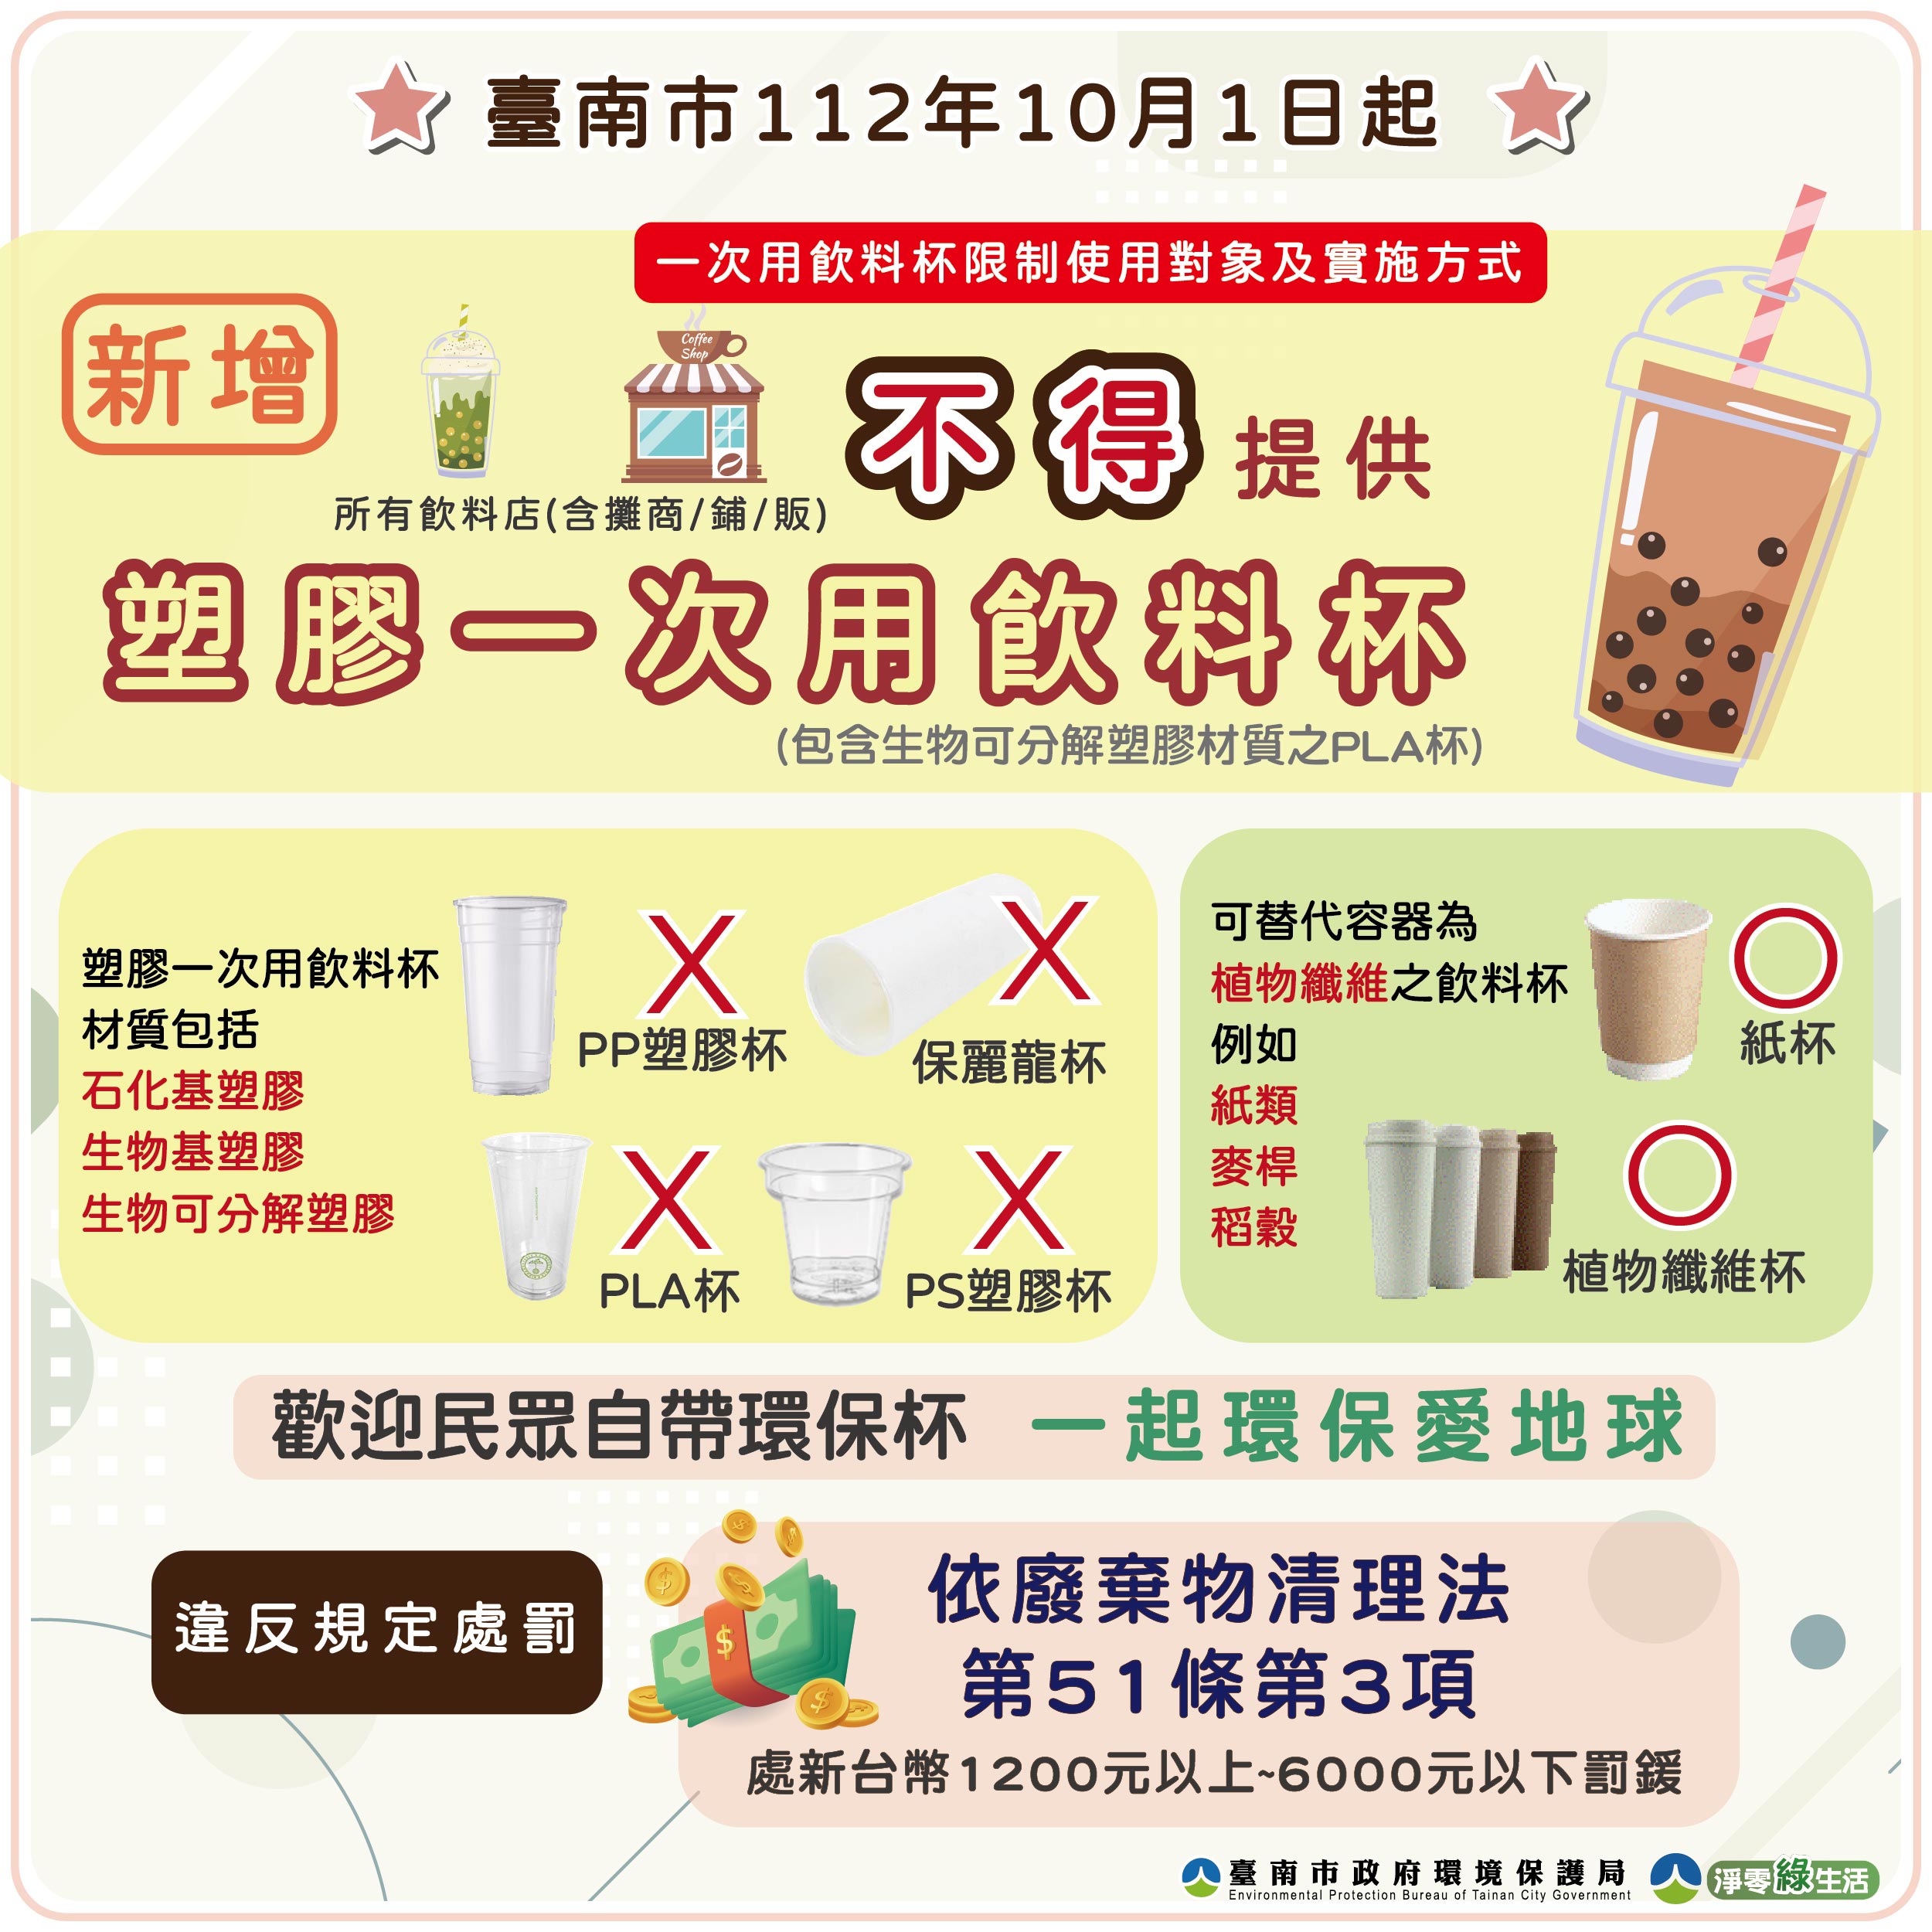 臺南市112年10月1日起飲料店不得提供塑膠一次用飲料杯